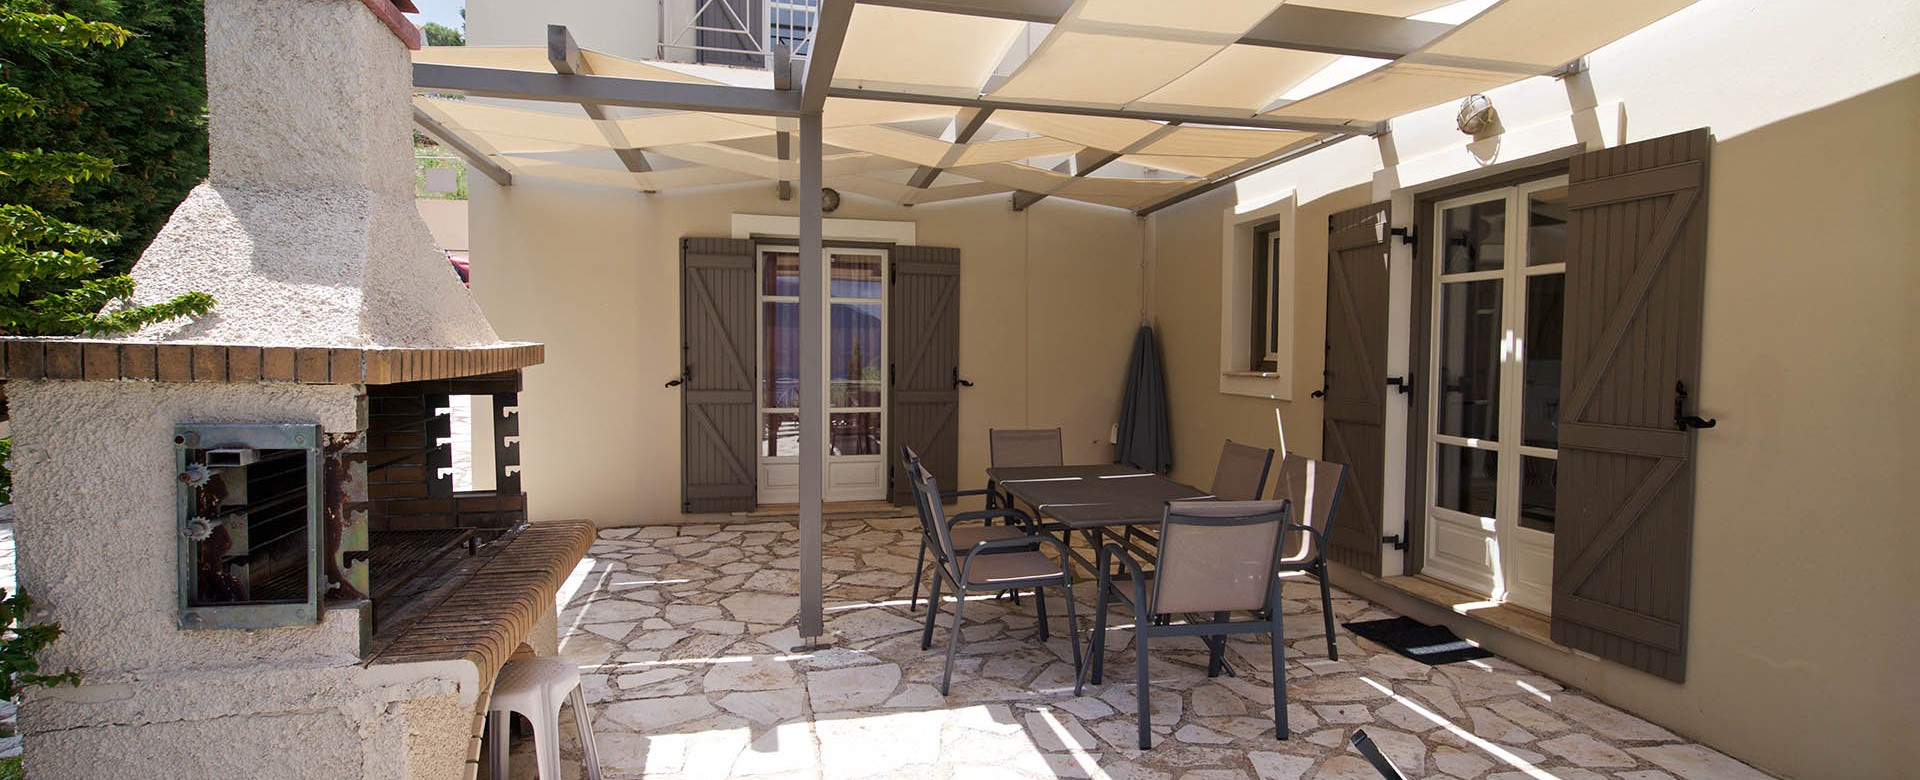 villa-helios-patio-barbeque-area.jpg